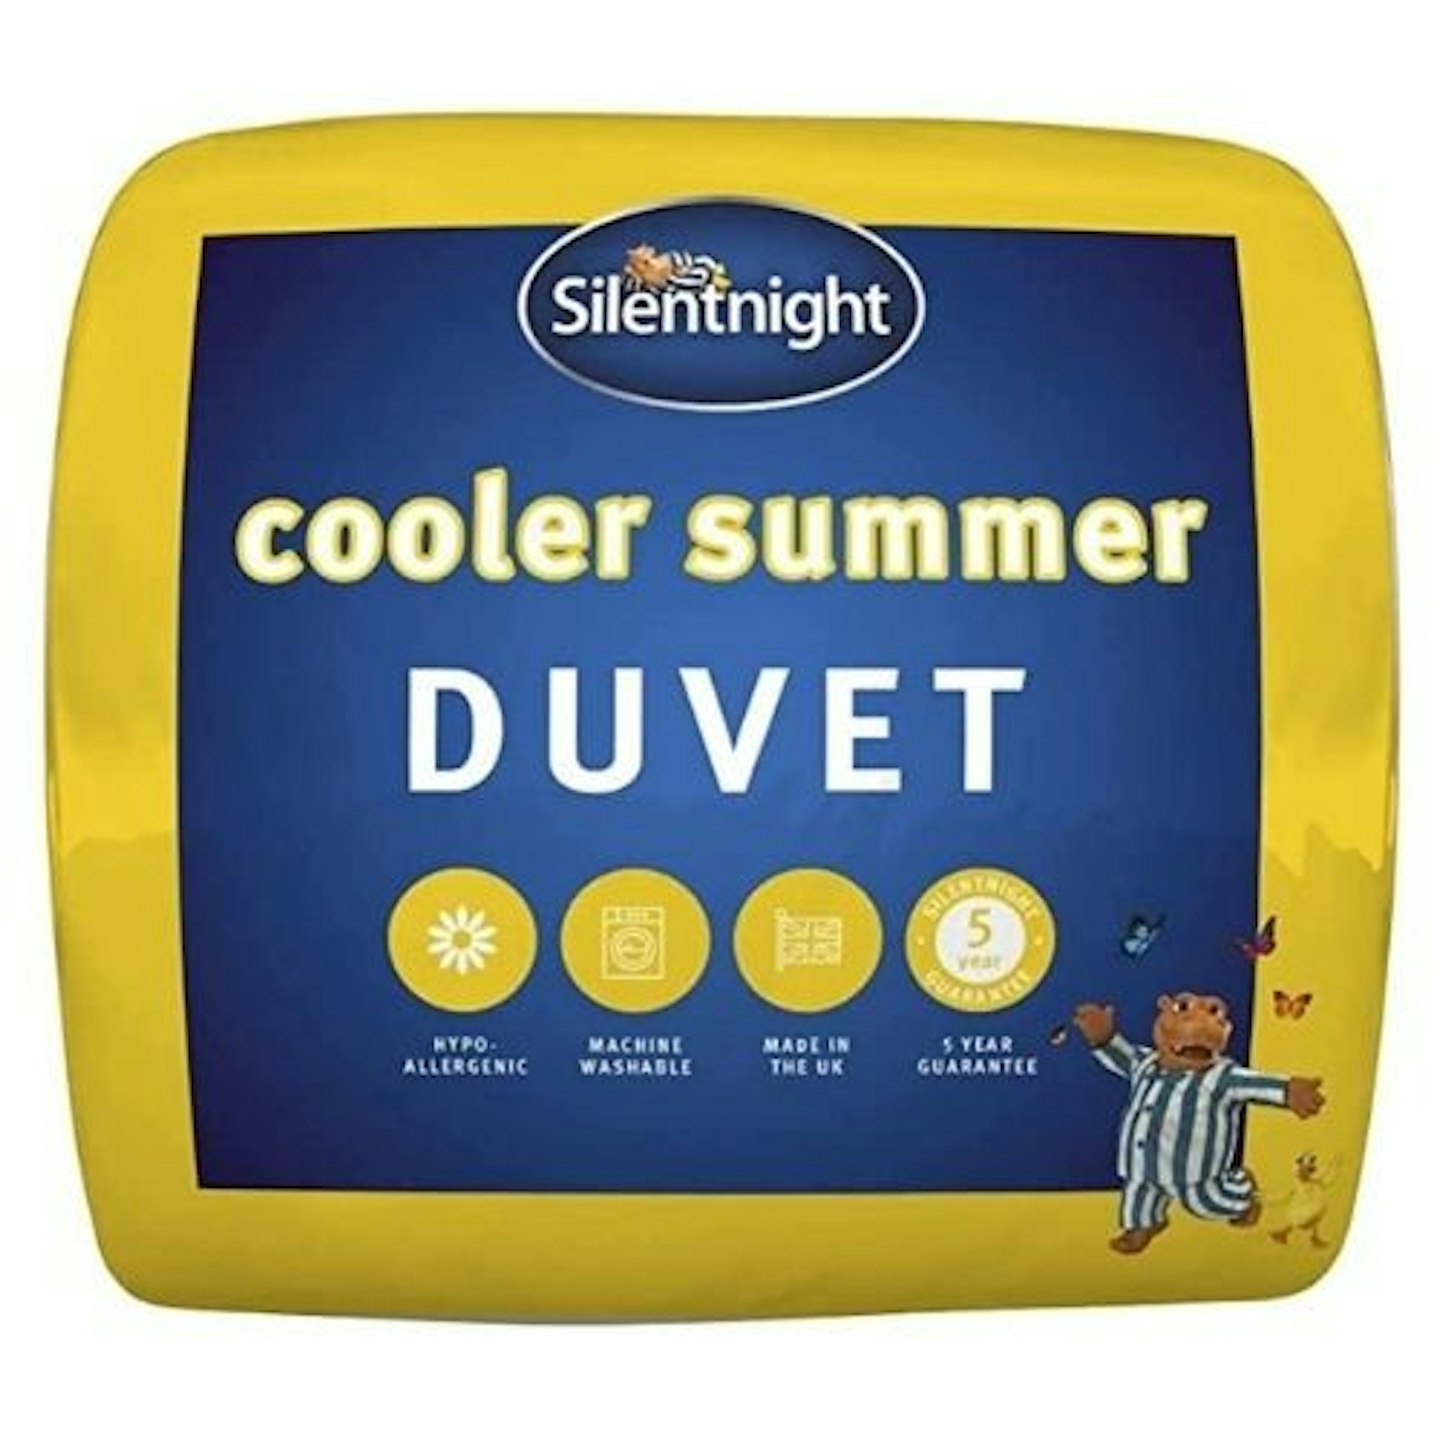 Silentnight Cooler Summer Double Duvet